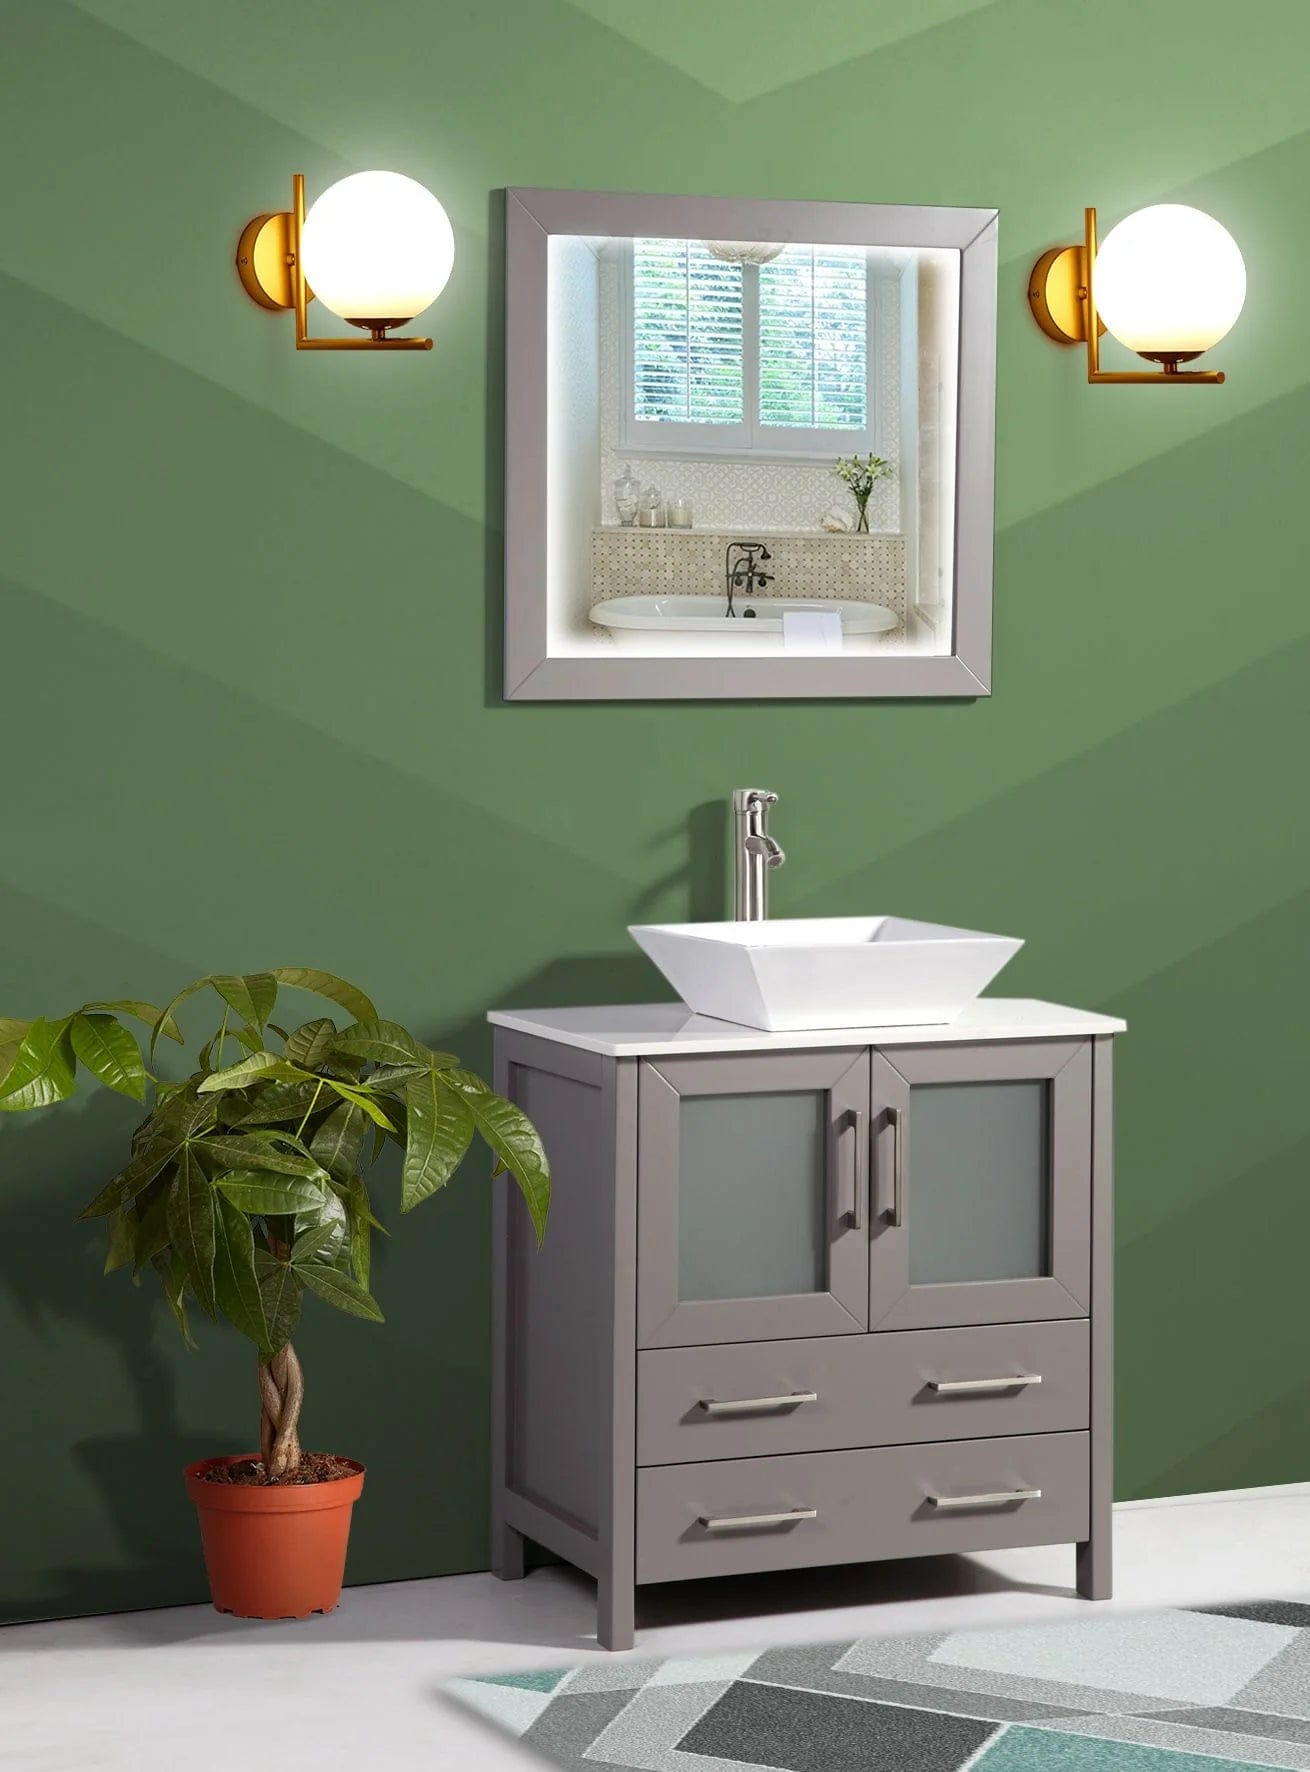 30 in. Single Sink Small Bathroom Vanity Set in Gray - Decohub Home